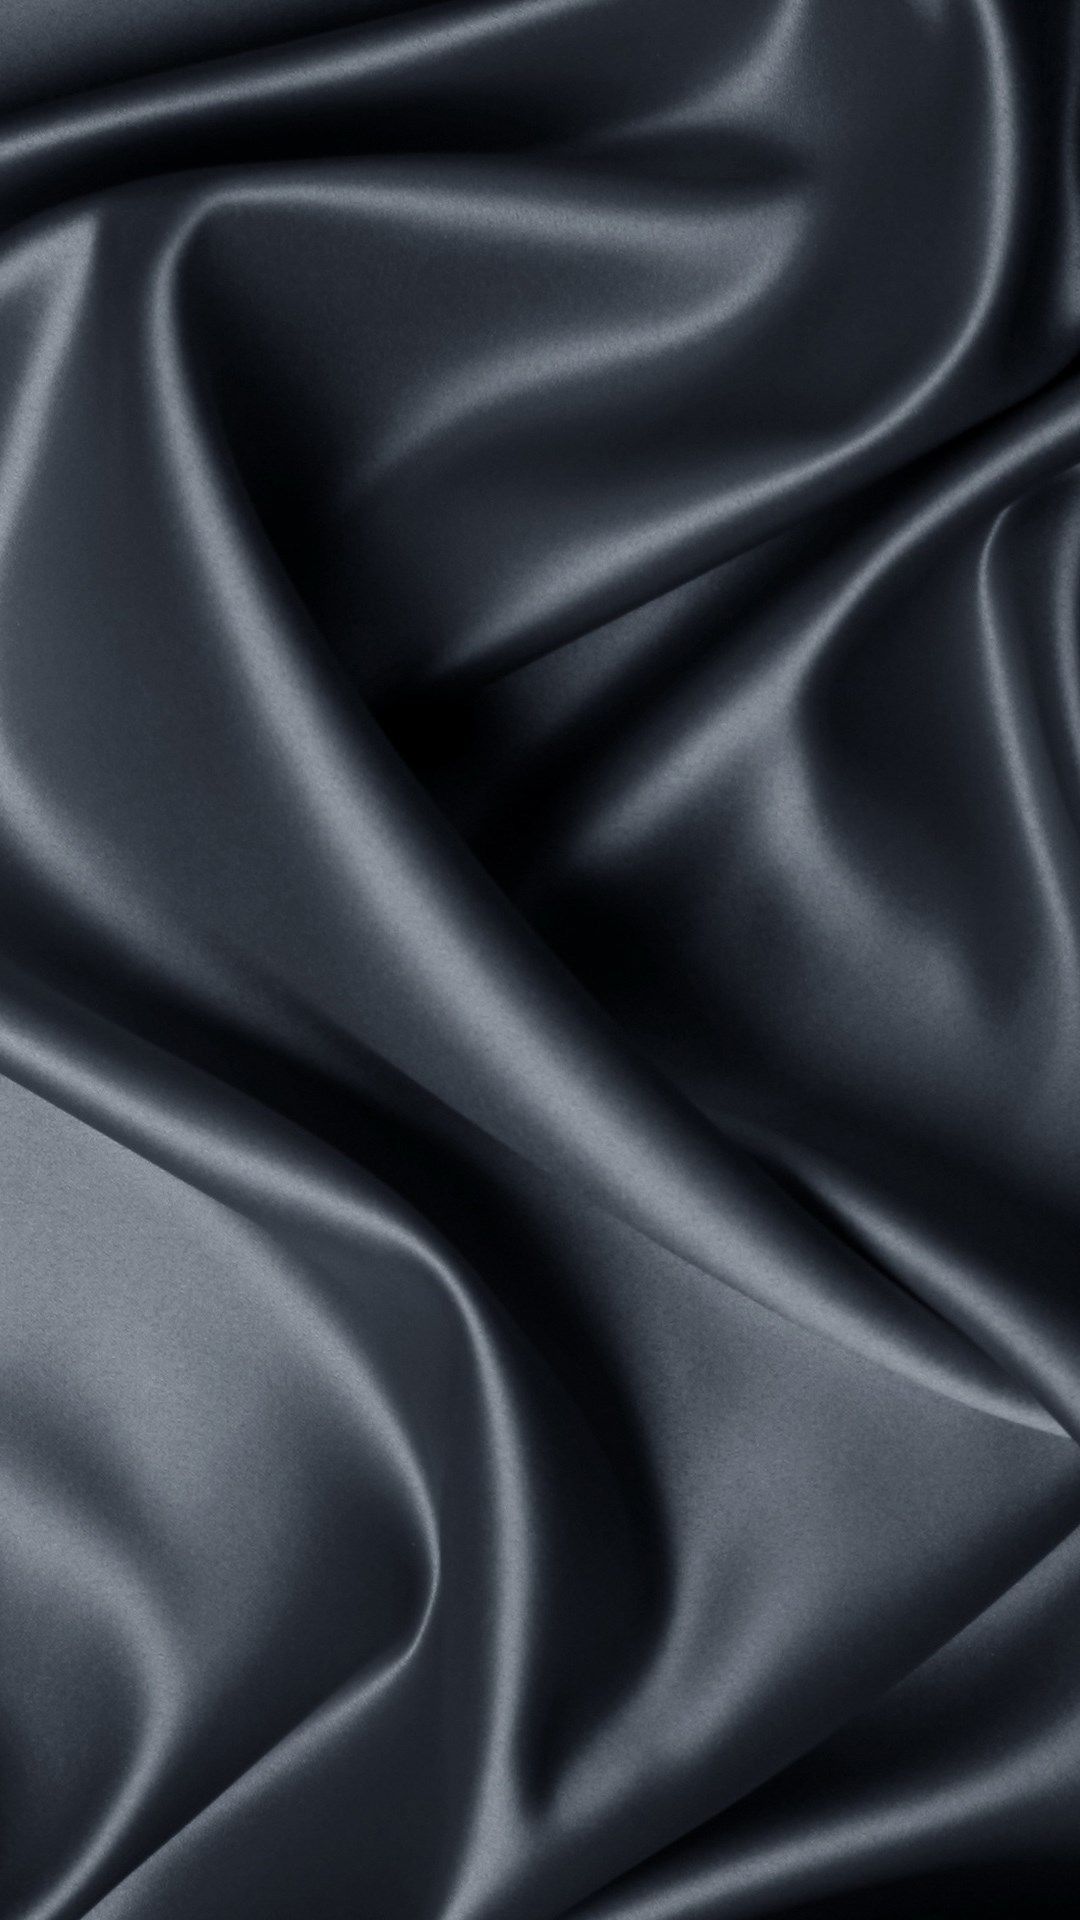 Black Silk Texture - Silk Wallpaper Iphone - 1080x1920 Wallpaper 